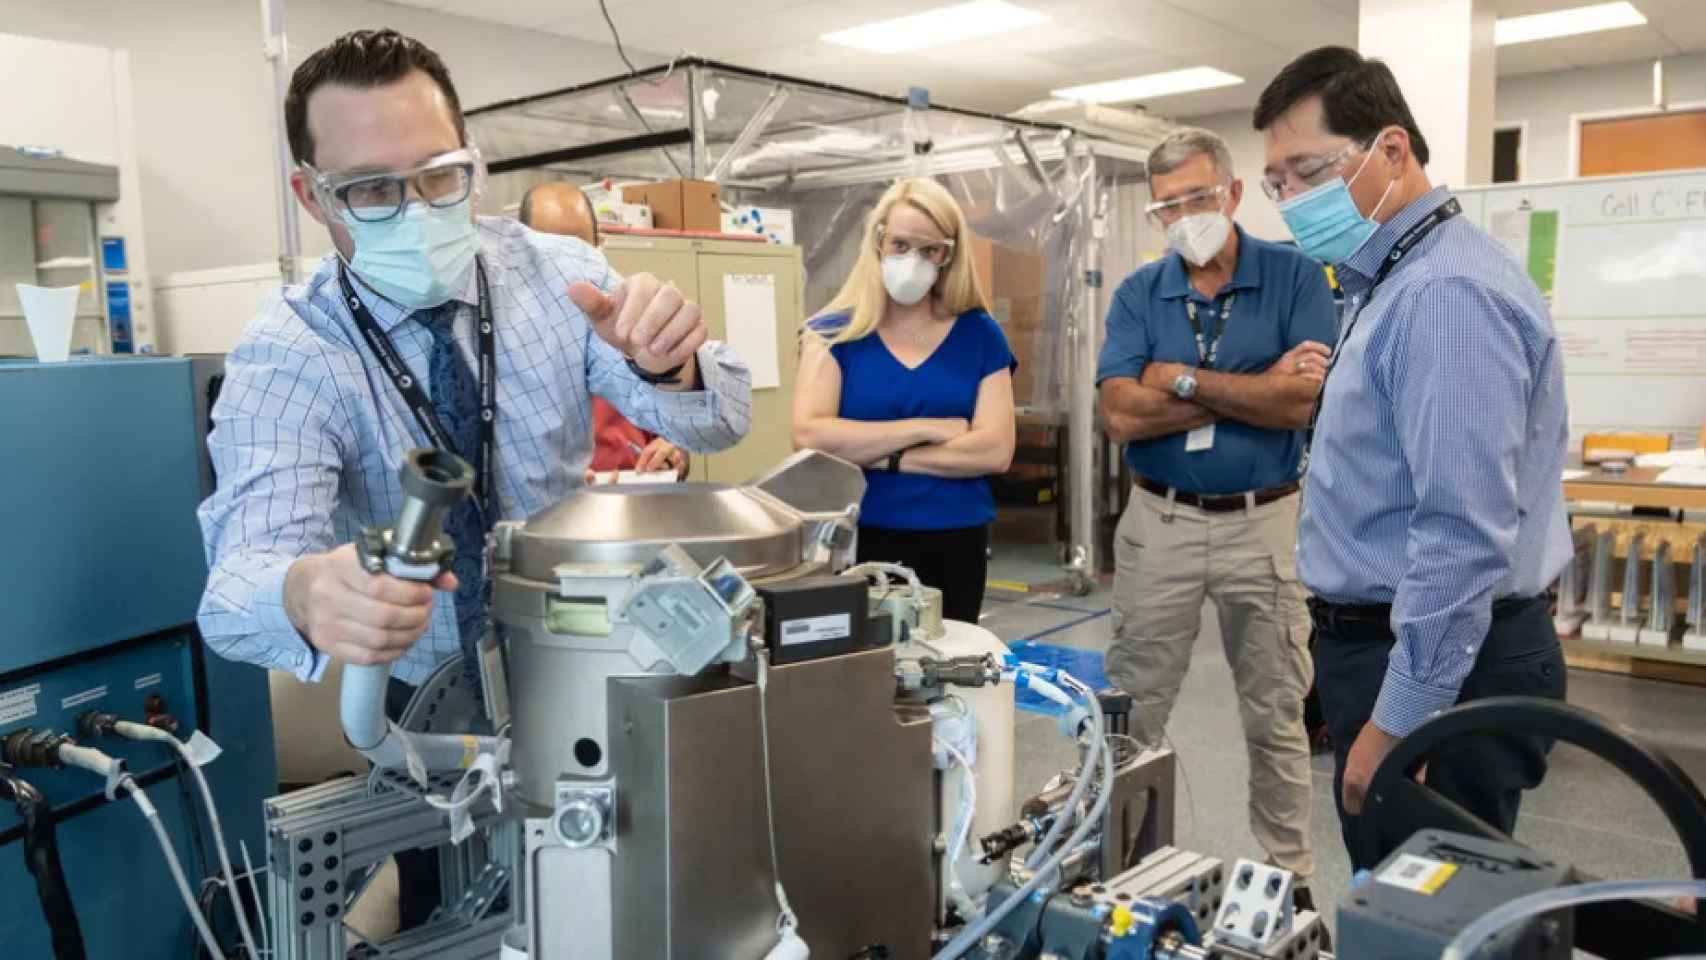 La astronauta de la NASA Kate Rubins supervisa el nuevo retrete de la NASA. Rubins viajará a la EEI en octubre, después de que llegue el inodoro.